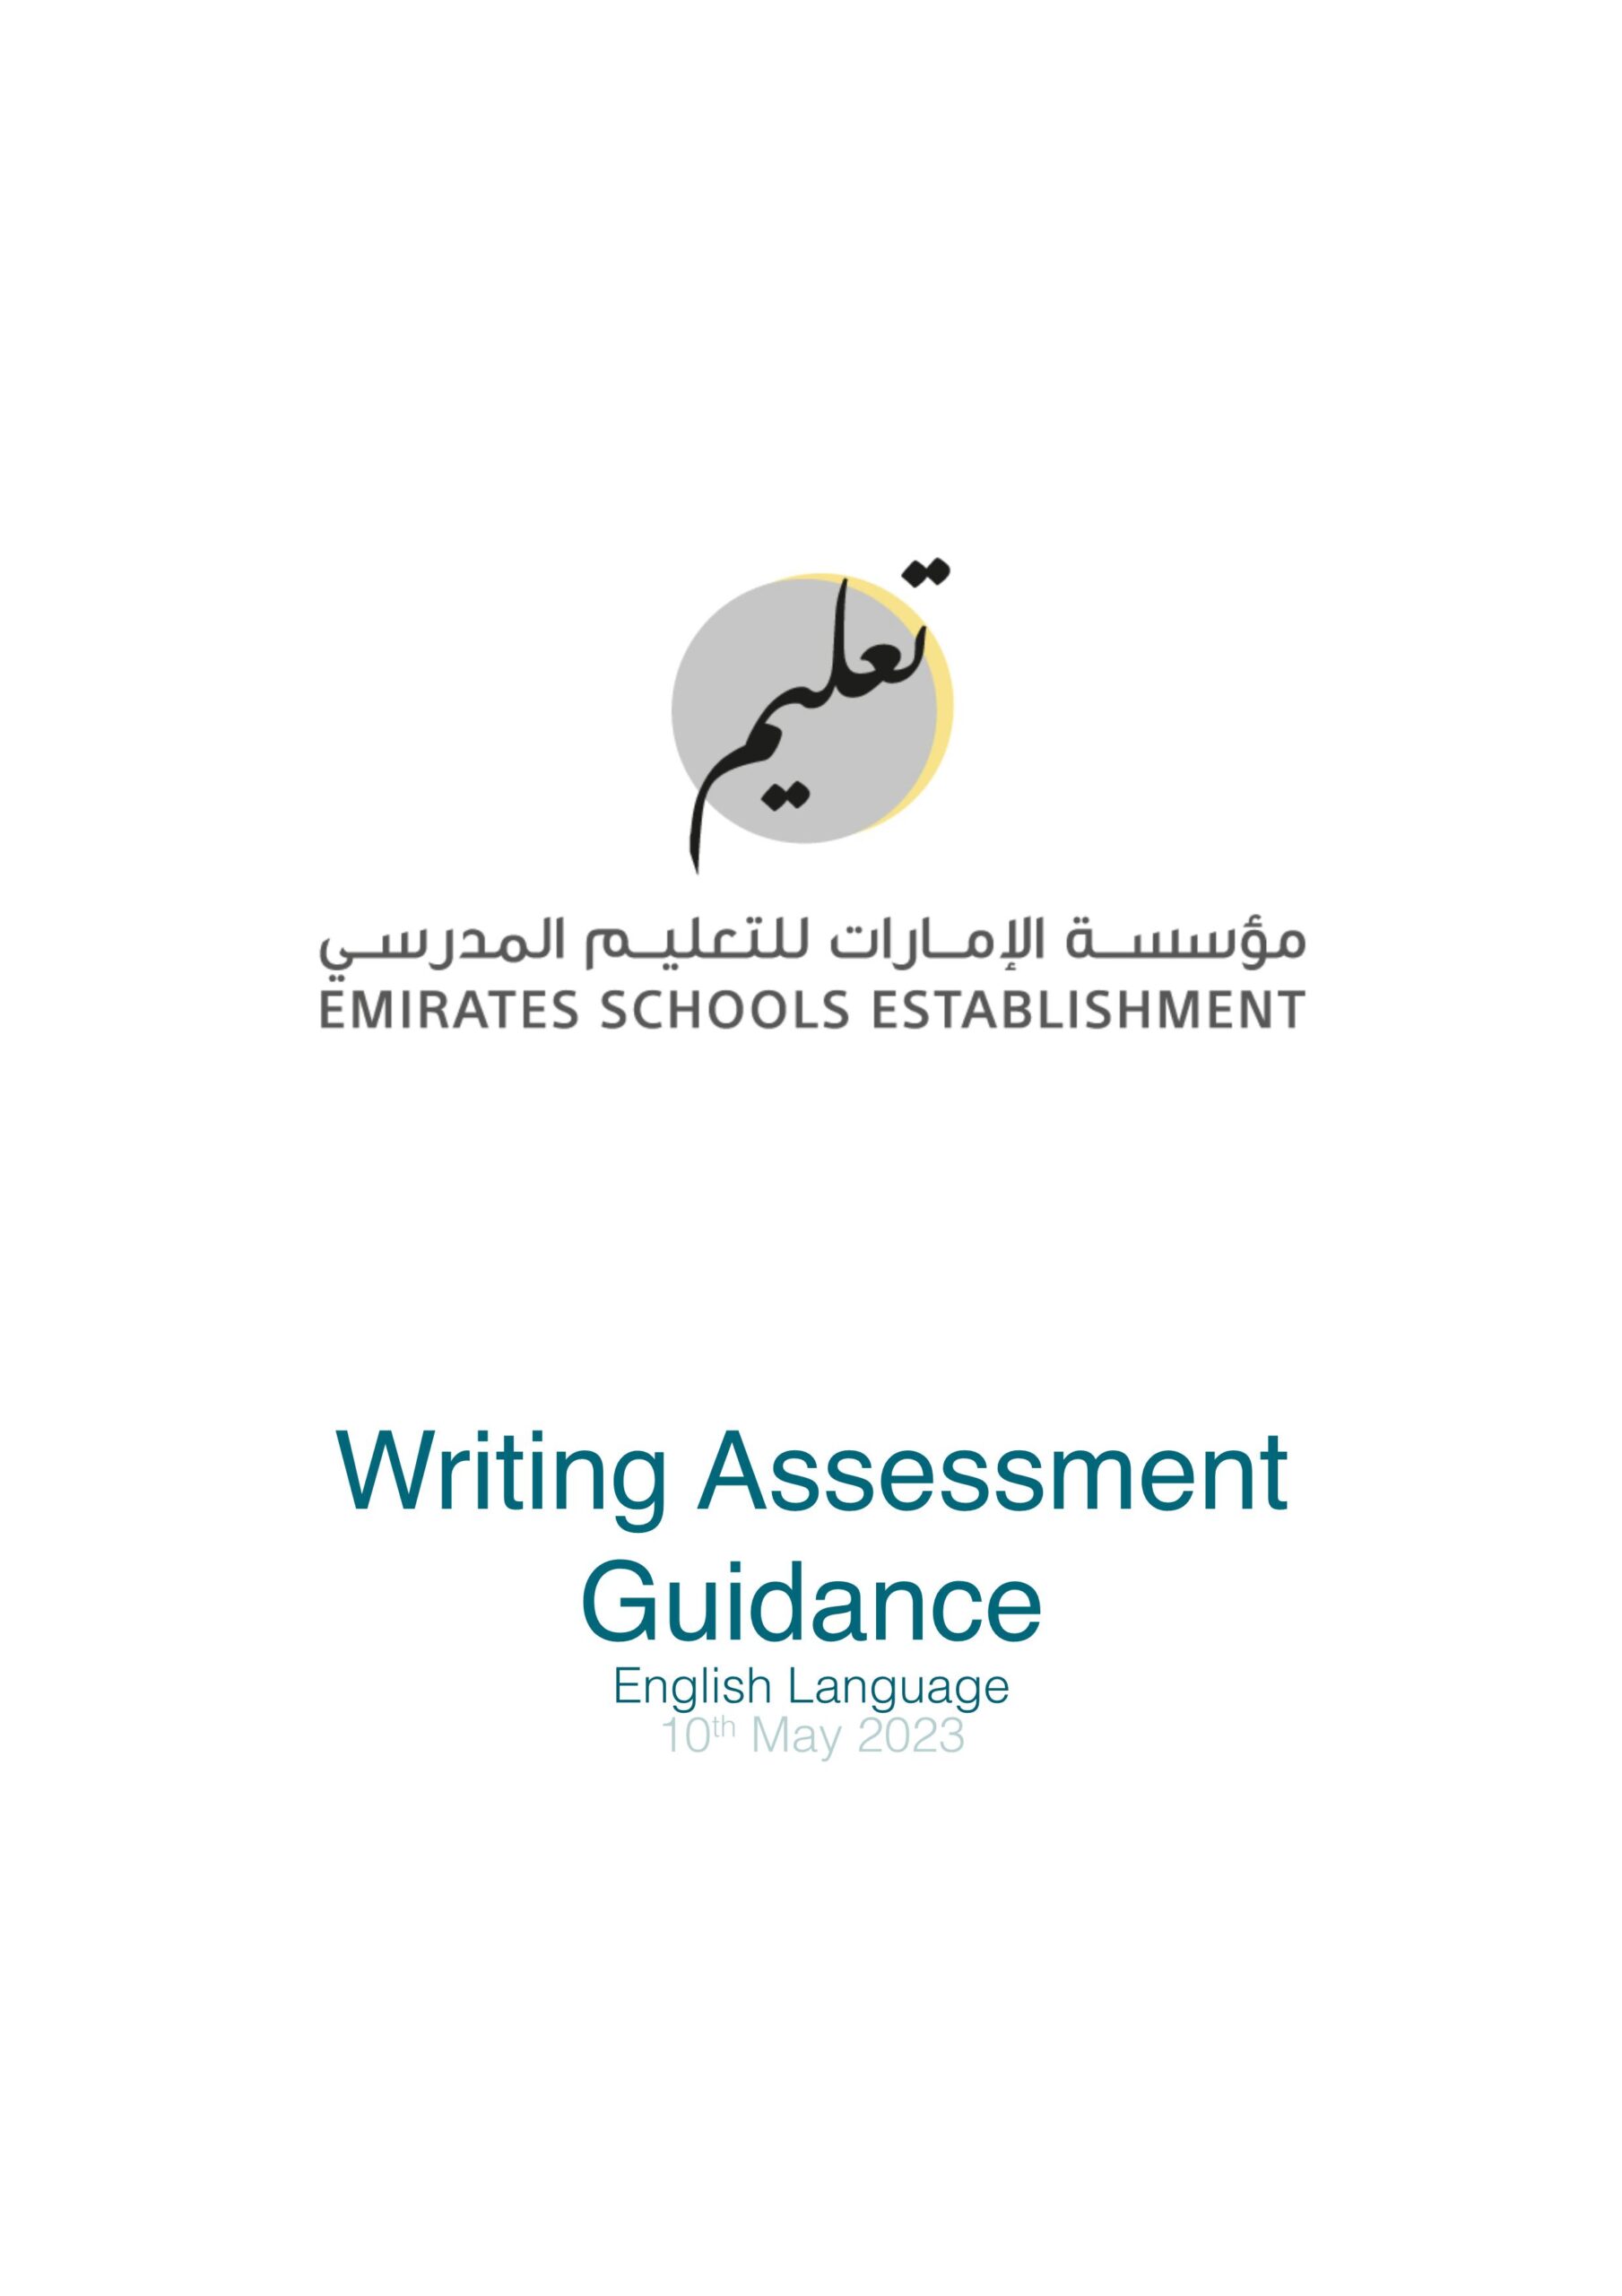 الدليل الارشادي لامتحان الكتابة النهائي Writing Assessment Guidance اللغة الإنجليزية الصف الثالث إلى الثاني عشر 